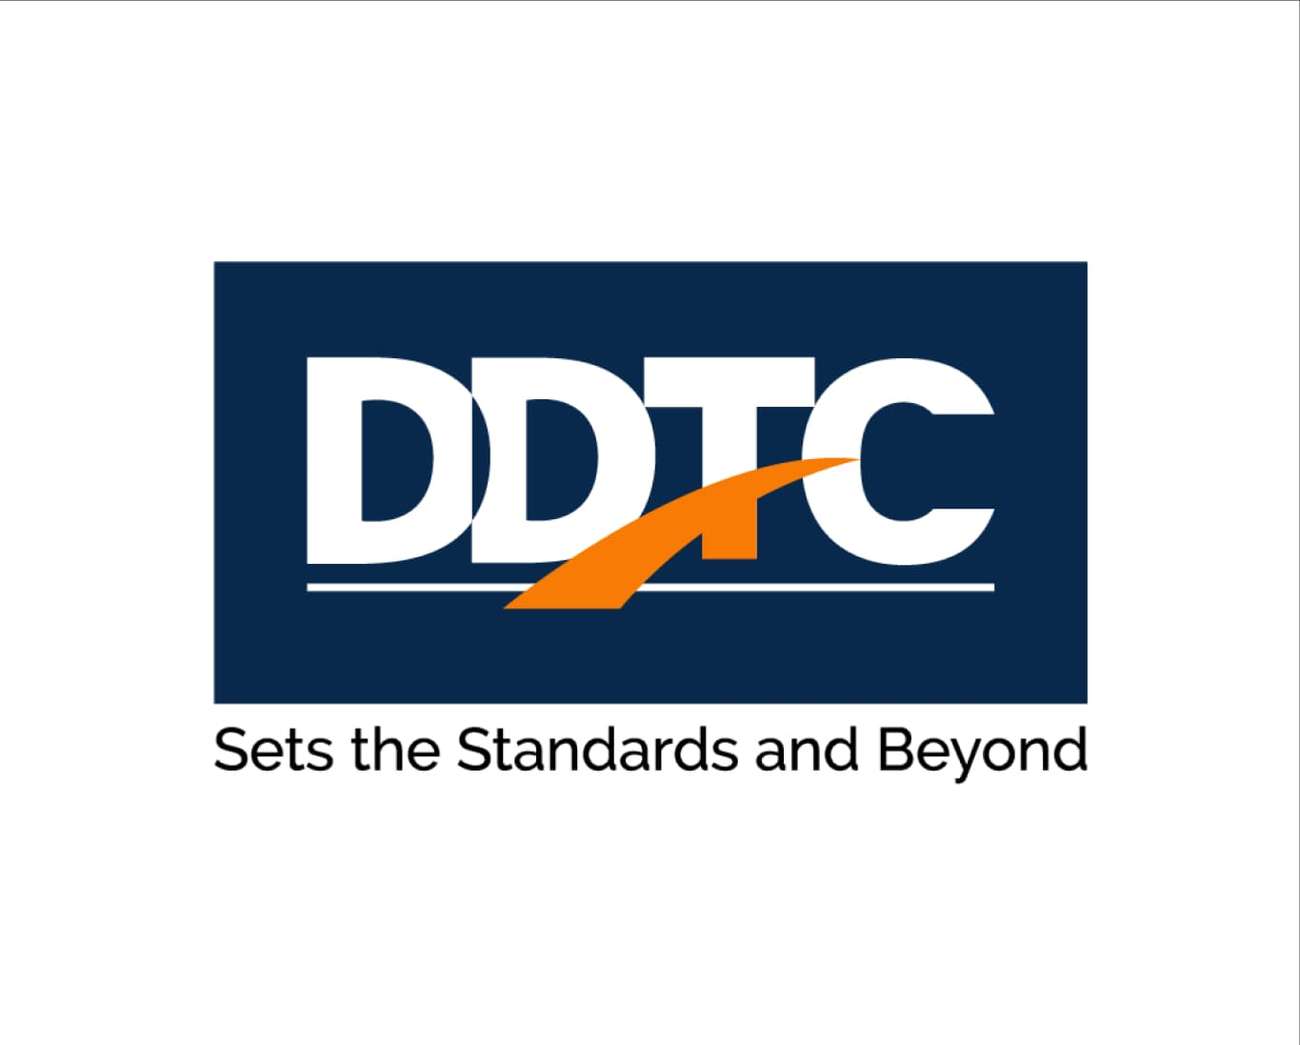 DDTC logo